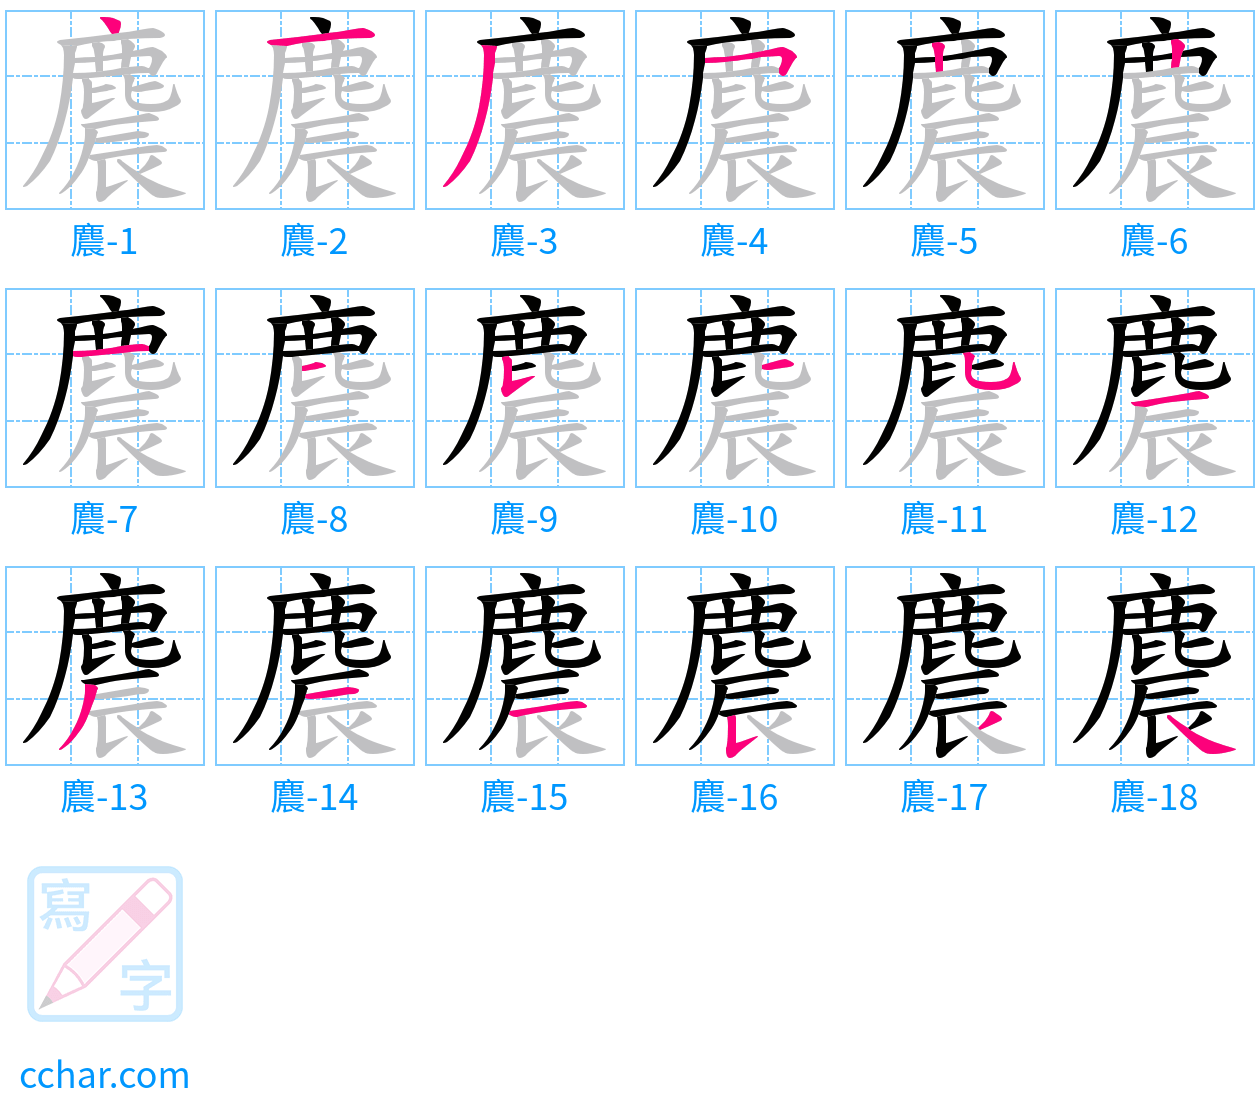 麎 stroke order step-by-step diagram